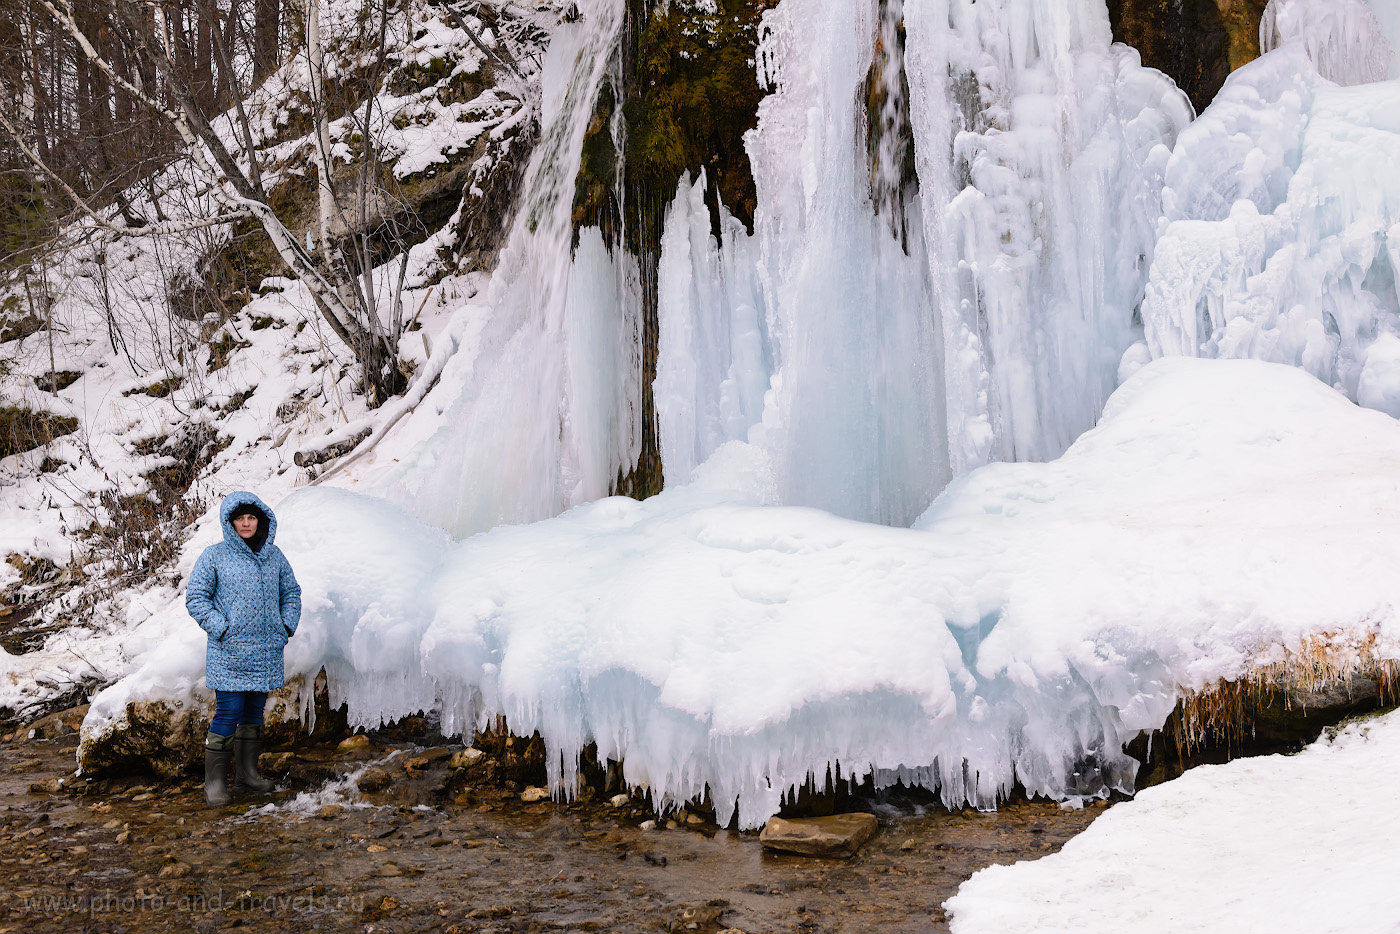 Фото 4. Будущий главный редактор у ледяного водопада Плакун в Пермском крае. Снято на Nikon D610 + Nikon 24-70mm f/2.8G без вспышки. 1/80, +1.33, 8.0, 500, 38.